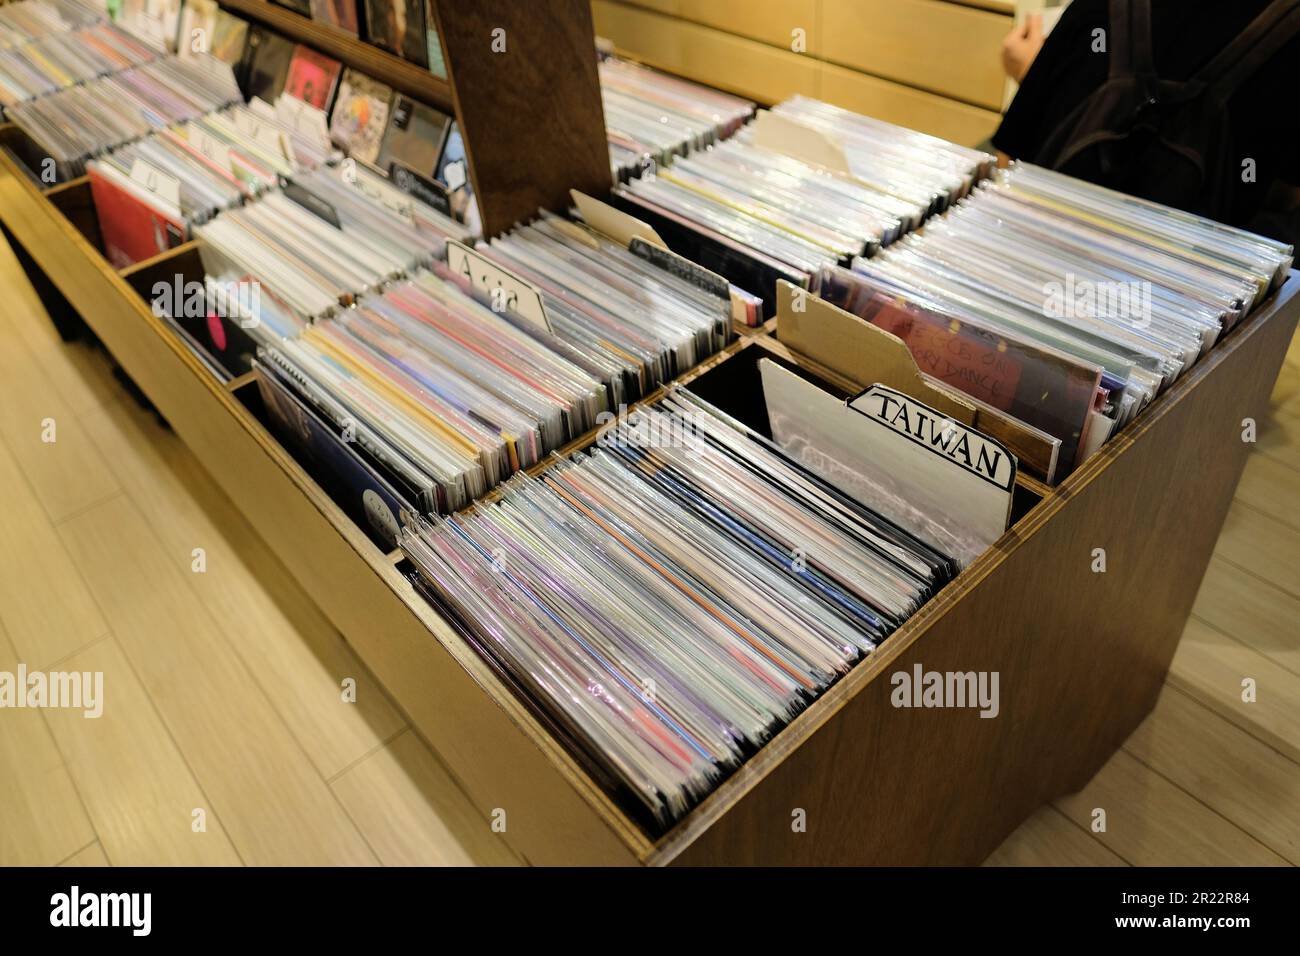 White Rabbit Records, un negozio indipendente che vende musica indie e alternativa su vinile e cd situato nel quartiere di da'an, Taipei, Taiwan. Foto Stock